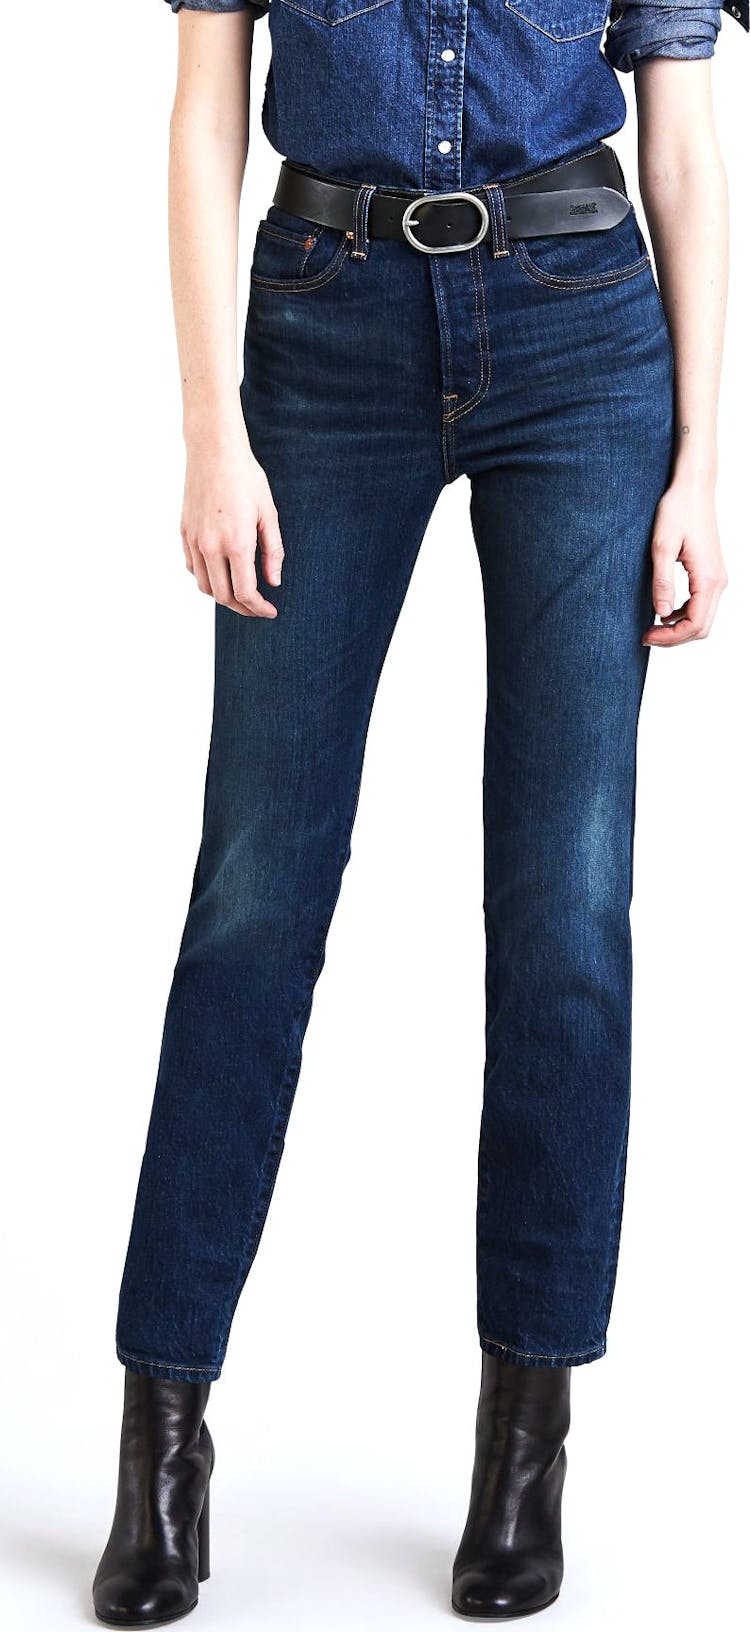 Numéro de l'image de la galerie de produits 1 pour le produit Jeans Wedgie - Femme